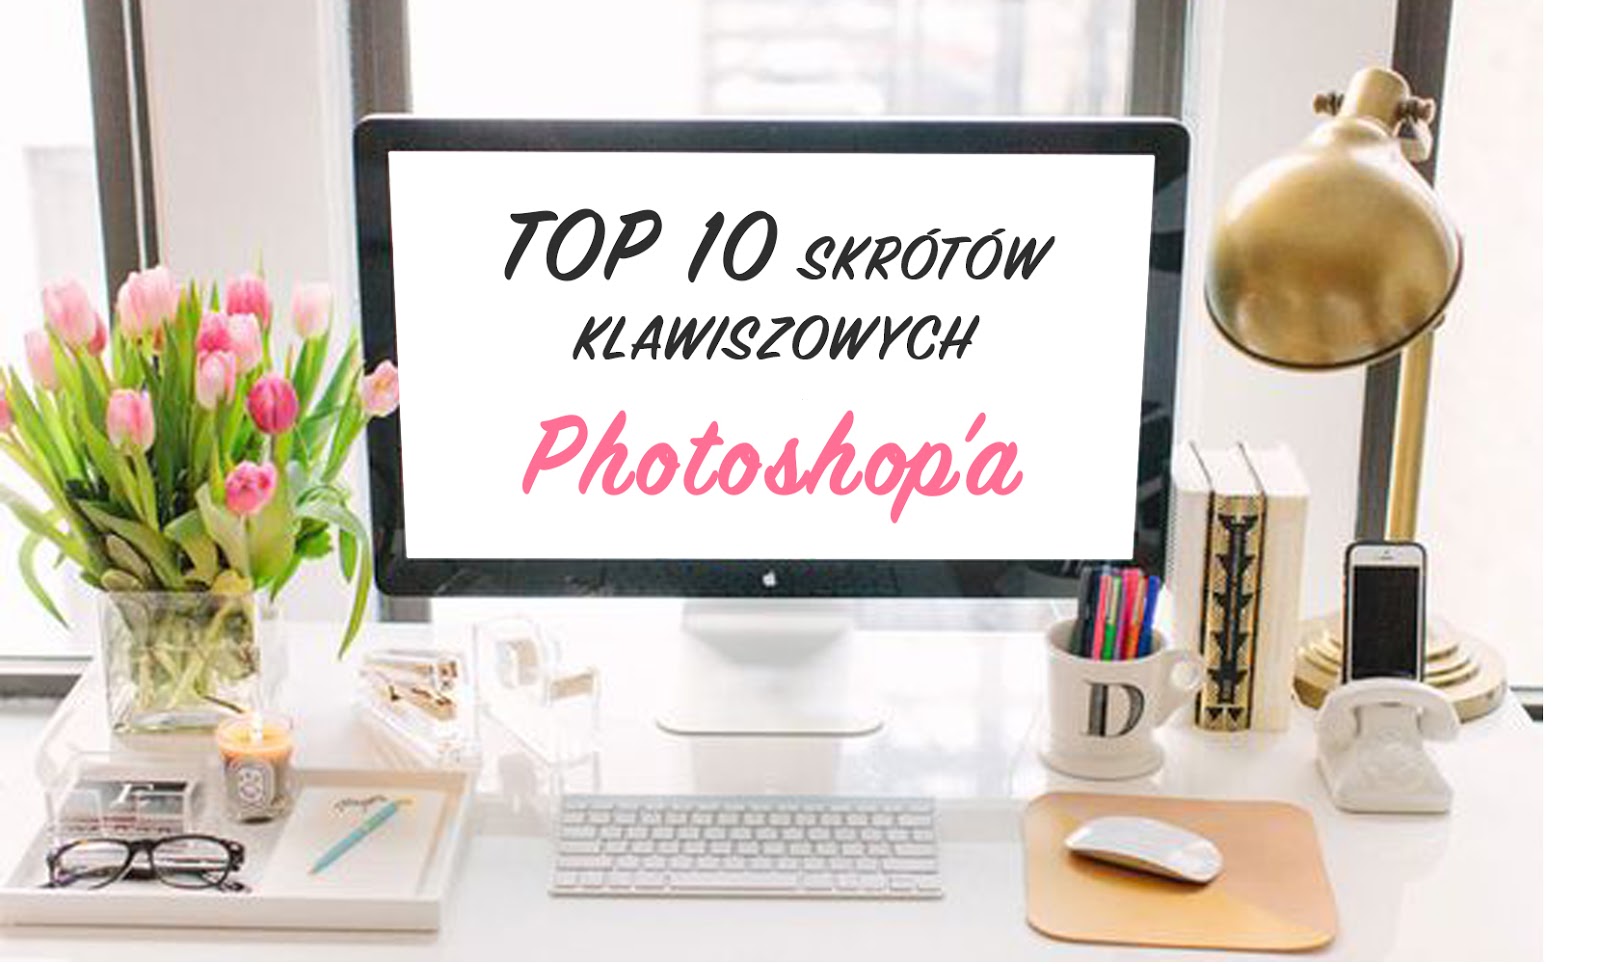 Top 10 skrótów klawiszowych Photoshop'a | DO YOU LIKE MY ART?